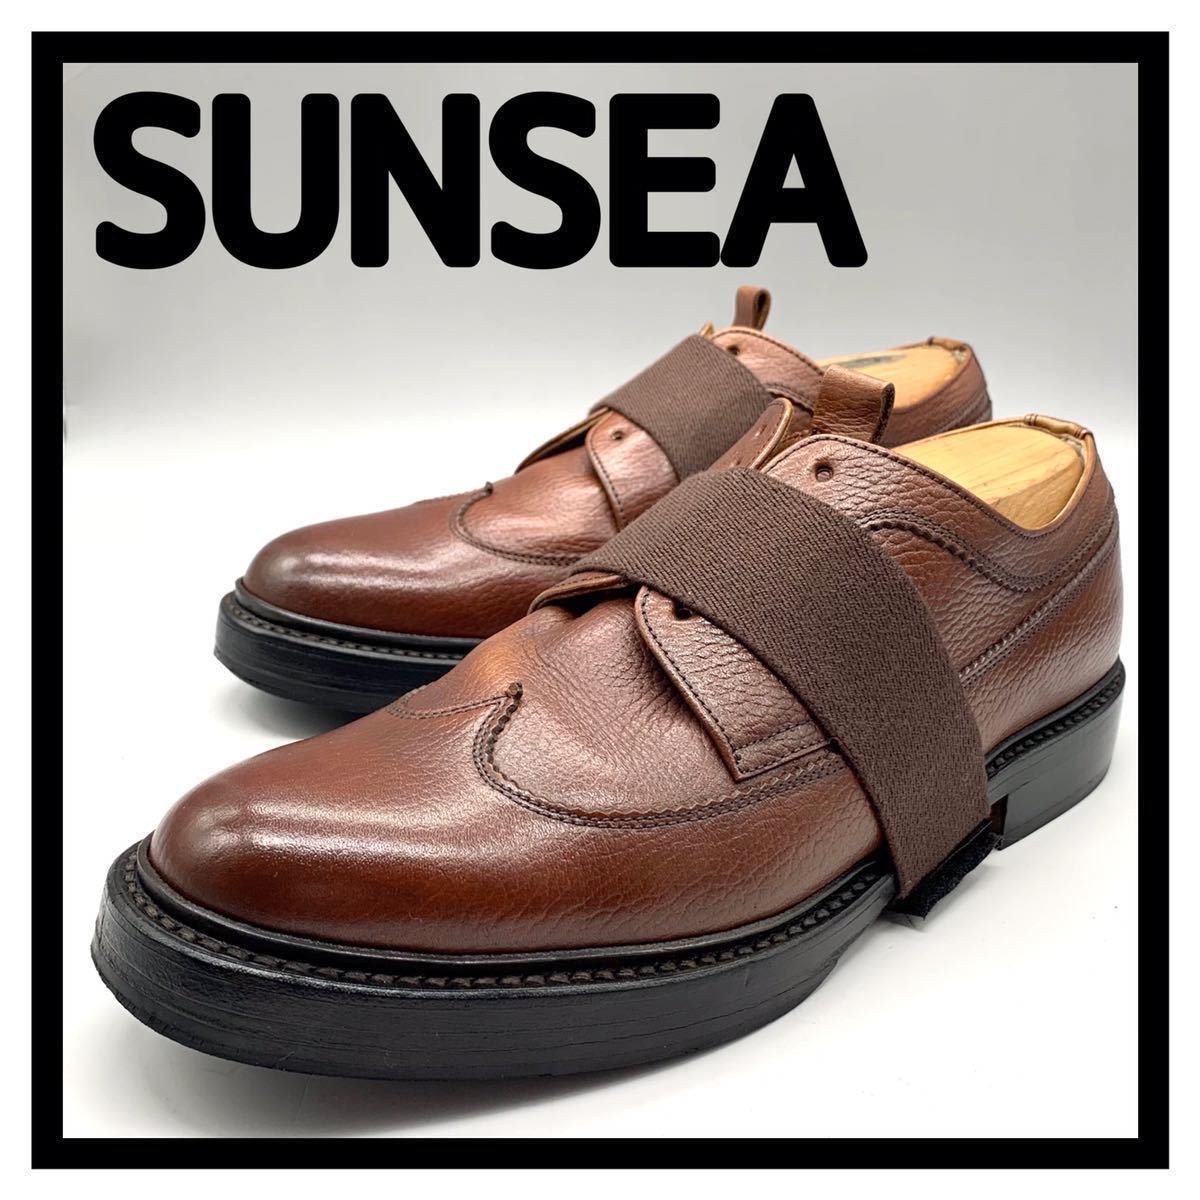 SUNSEA (サンシー) ドレスシューズ ウイングチップ レースアップ シボレザー 牛革 ブラウン 26cm 革靴 ドメスティック メンズ